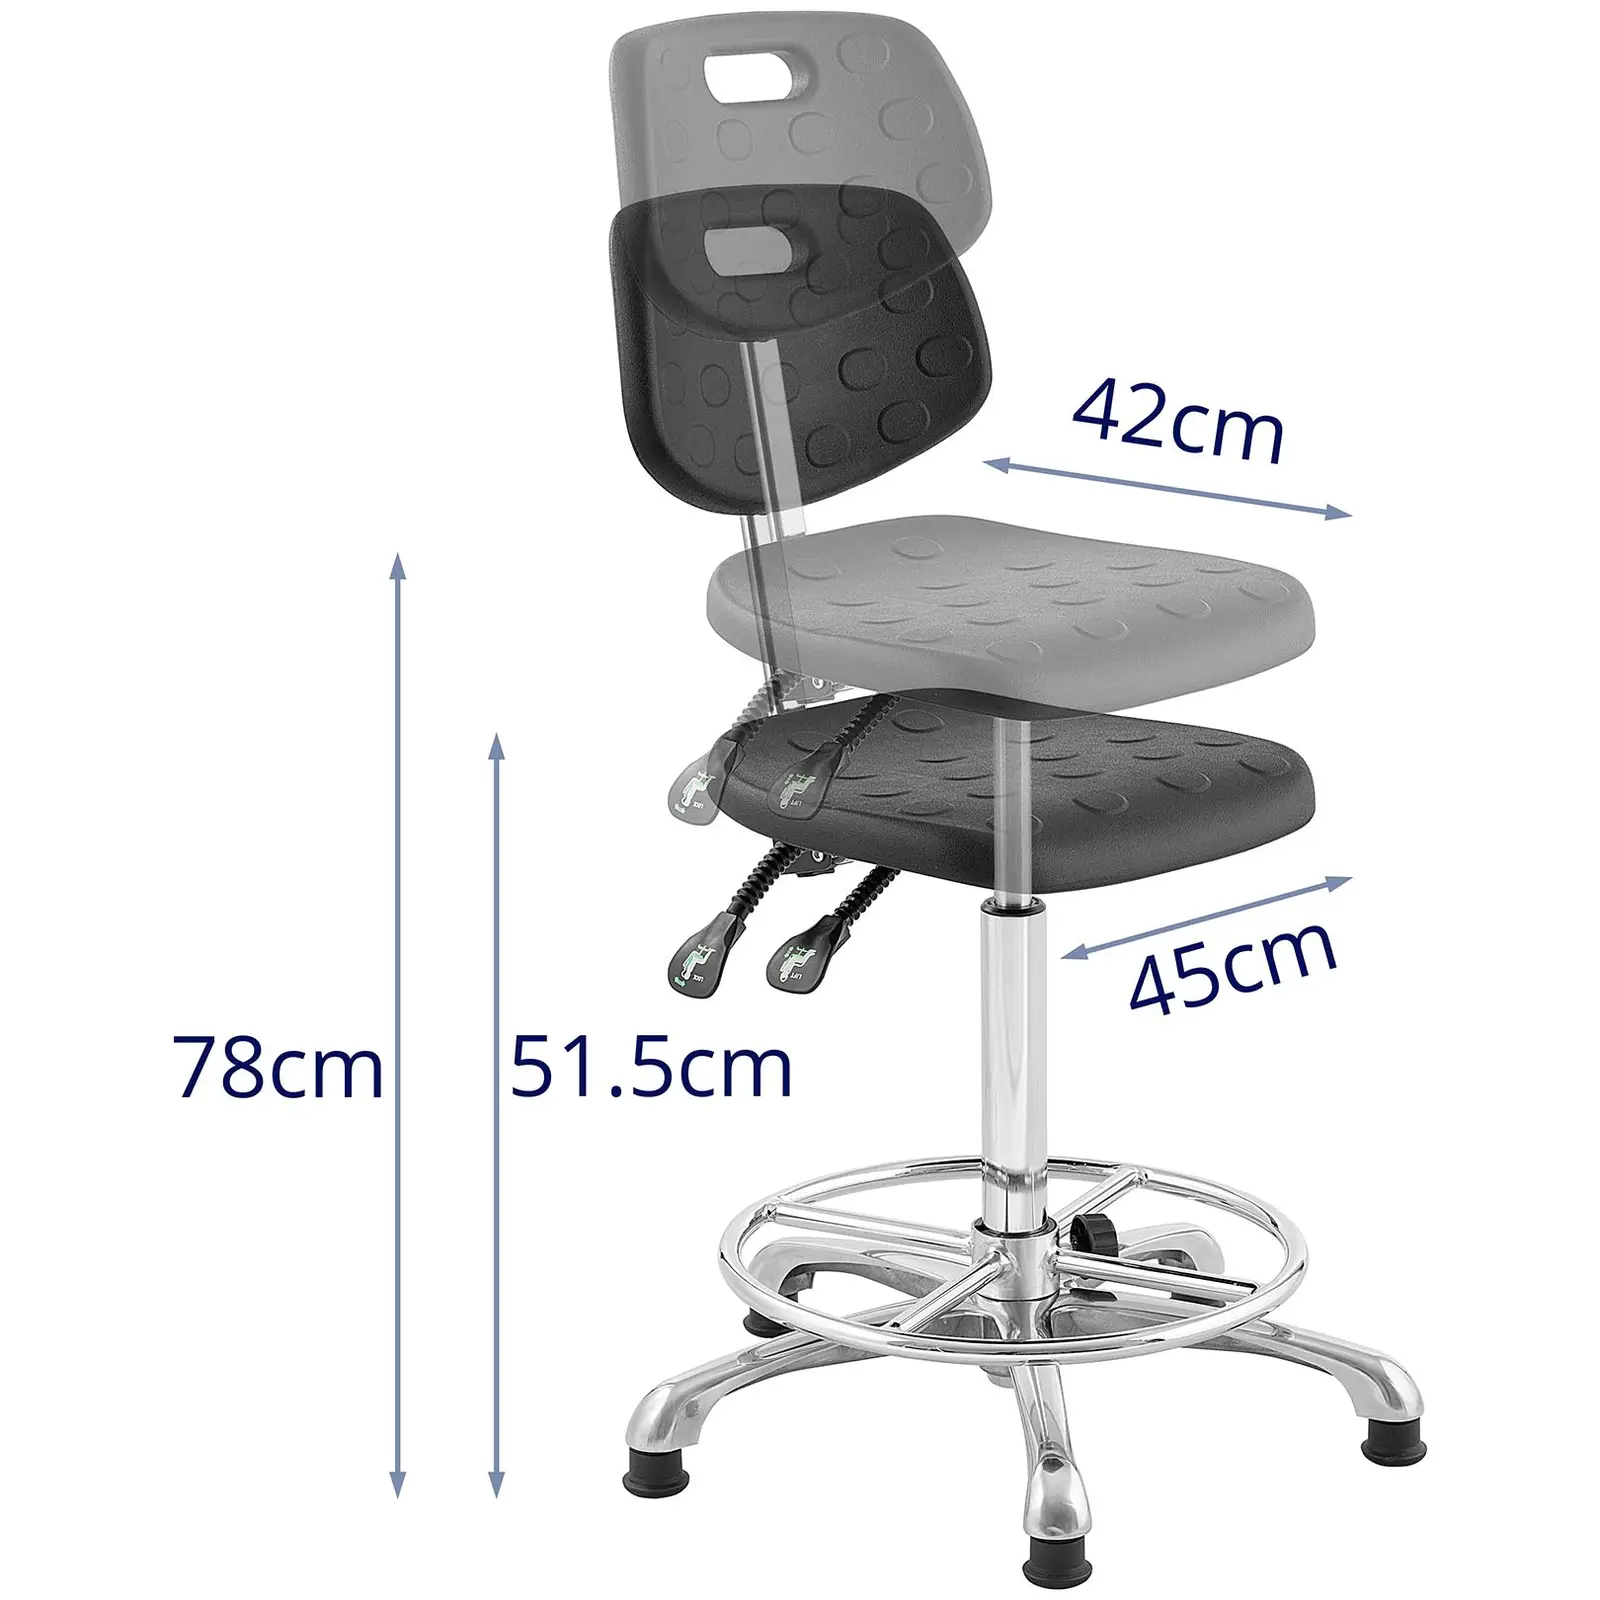 Industrijski stol - 120 kg - Black - višina nastavljiva od 515 - 780 mm